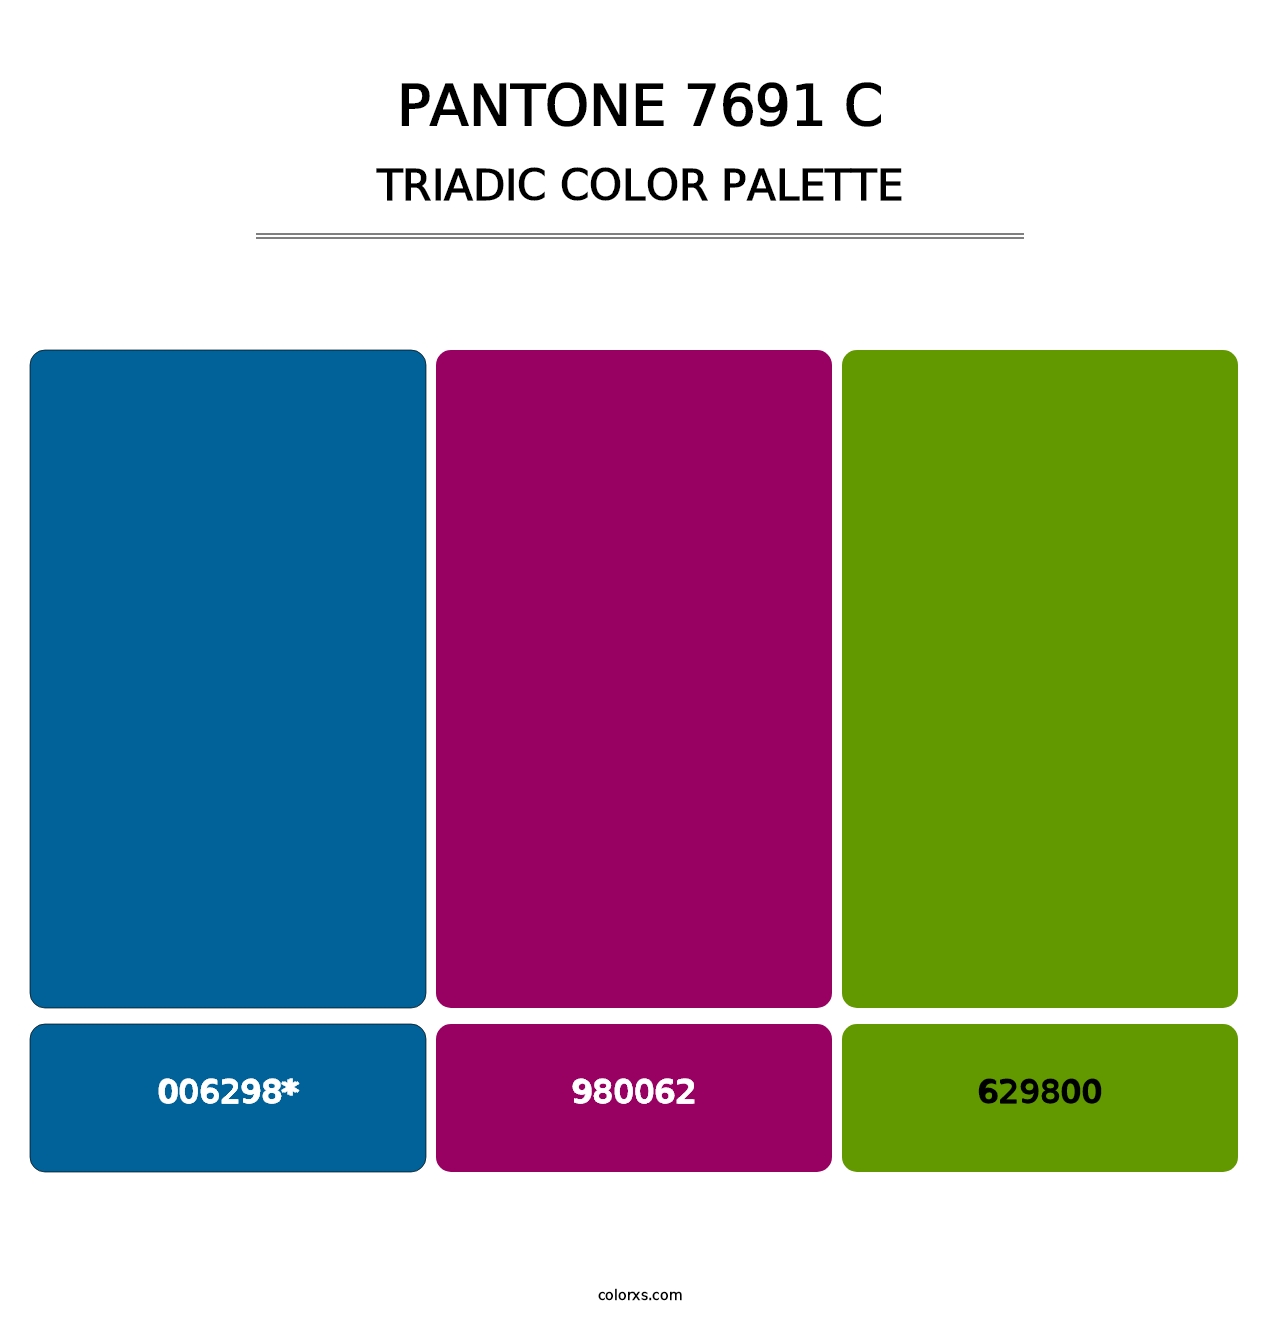 PANTONE 7691 C - Triadic Color Palette